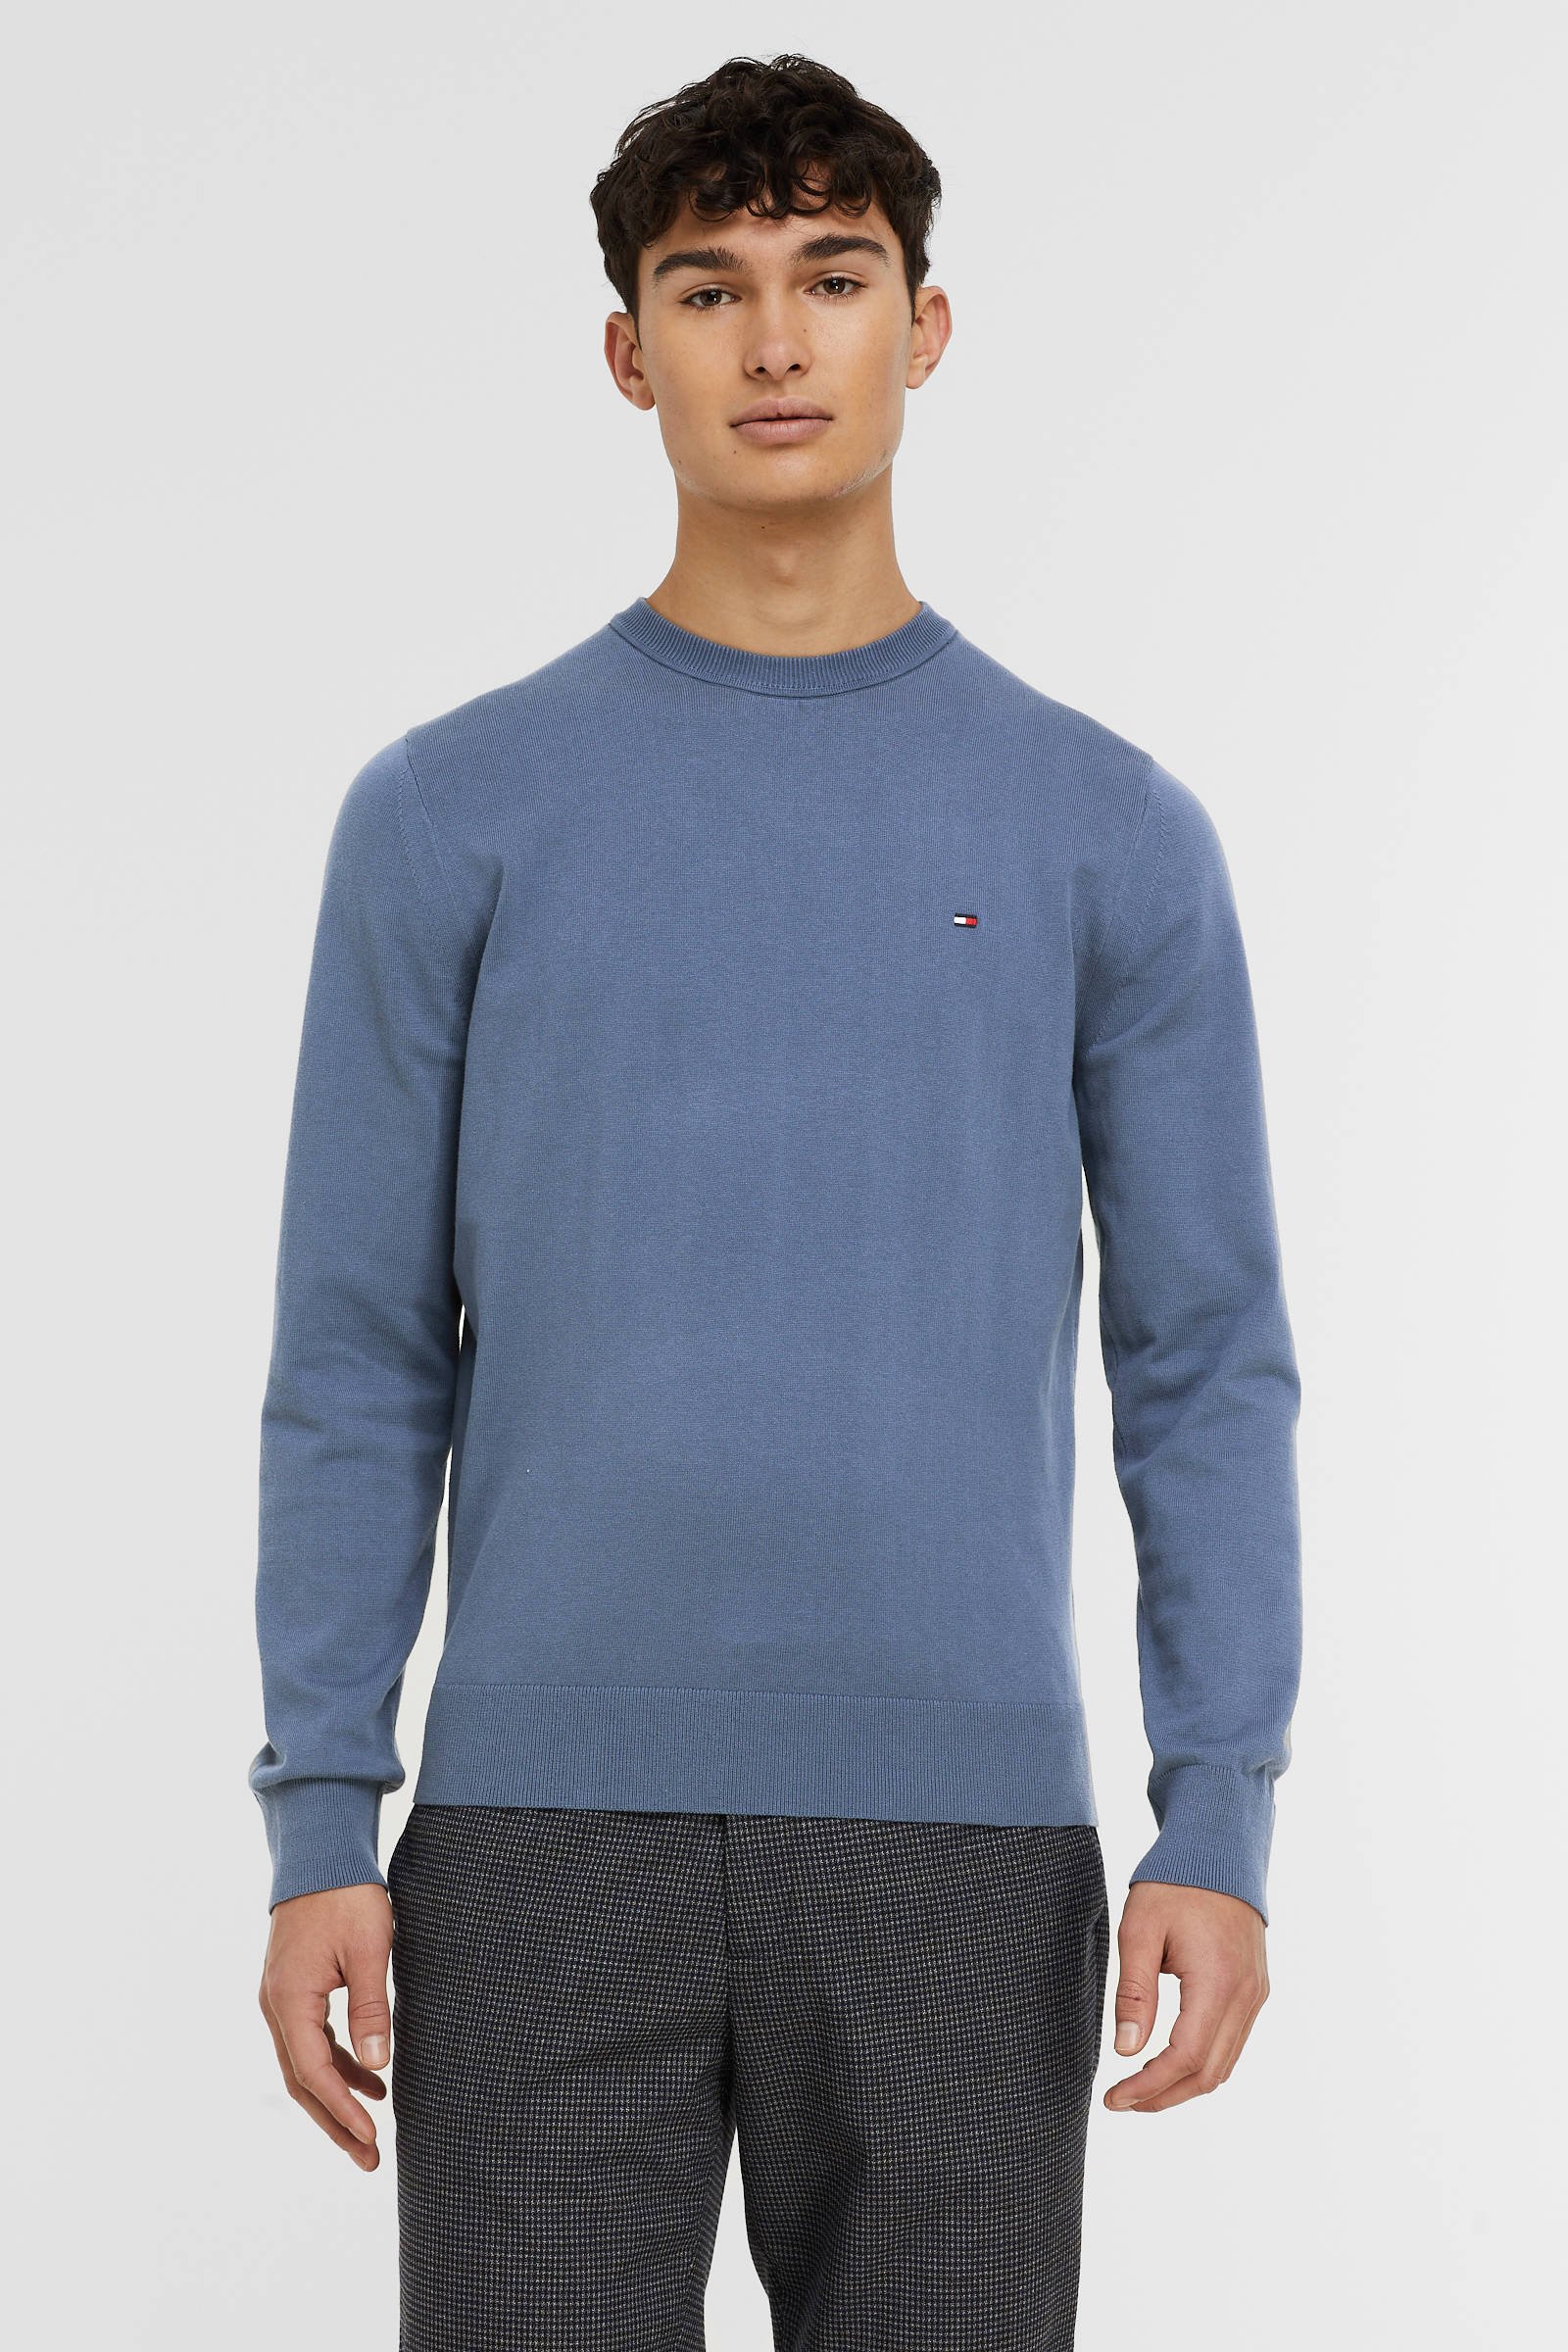 Tommy Hilfiger gemêleerde pullover met biologisch katoen faded indigo online kopen